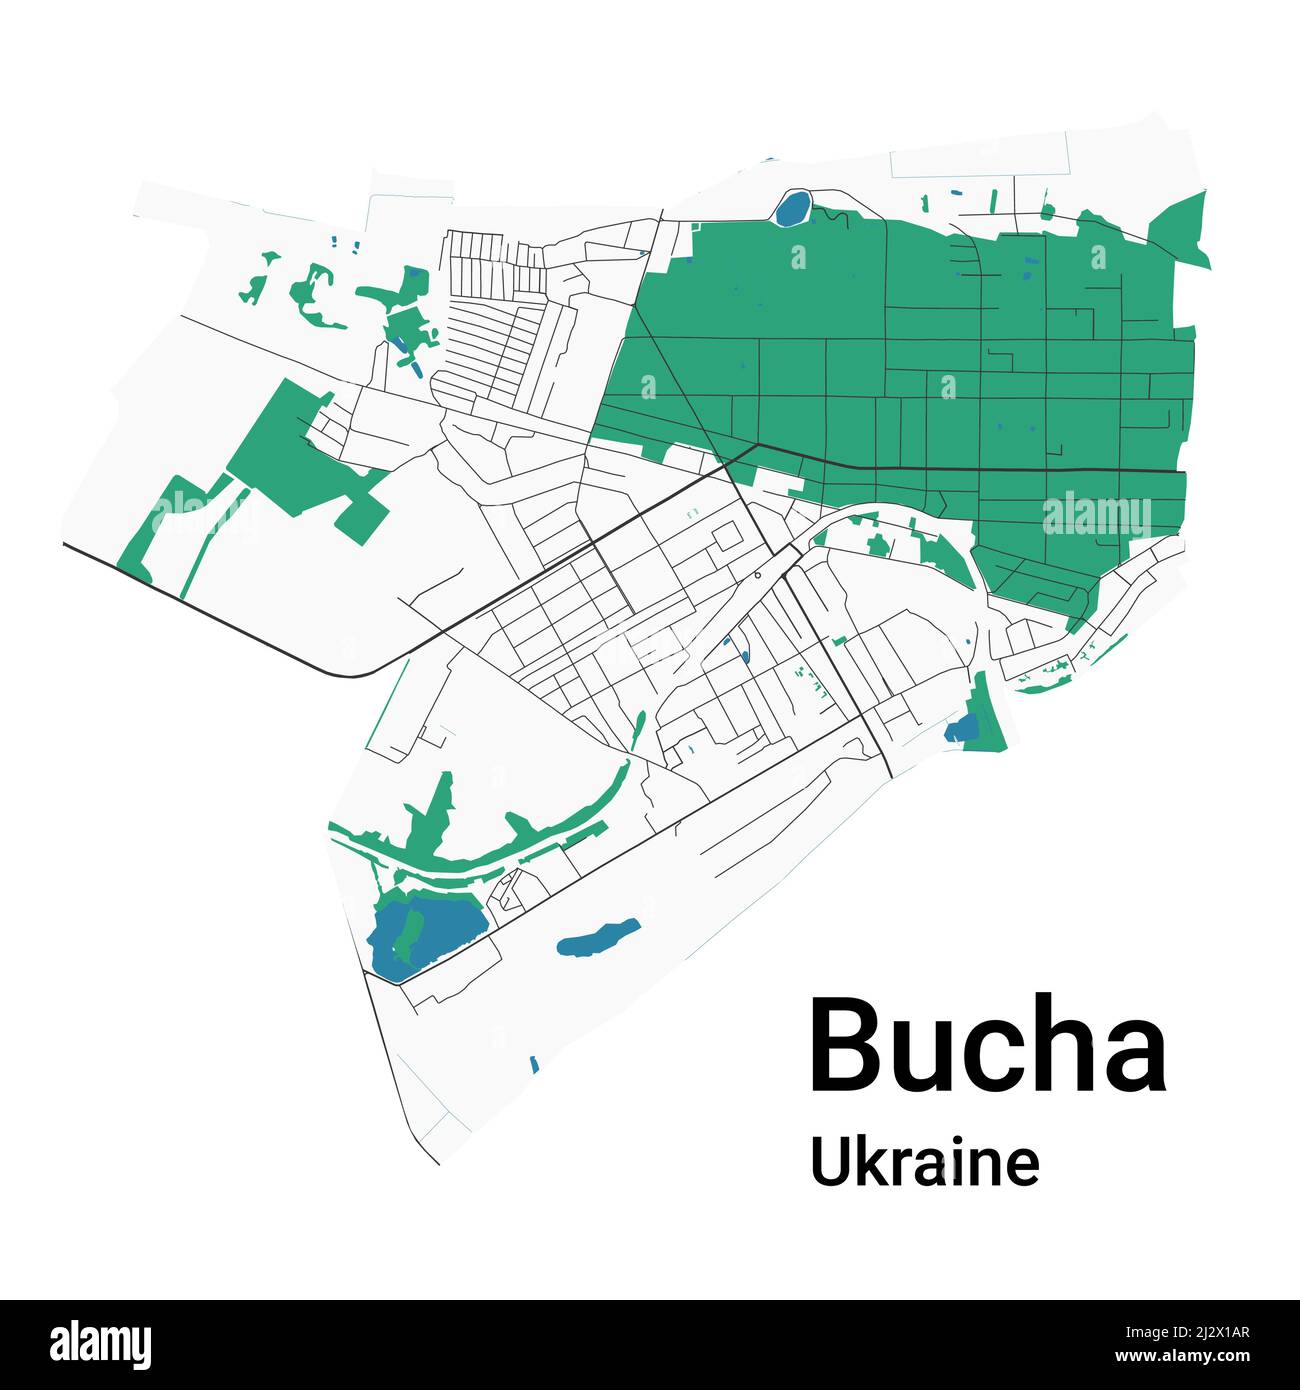 Mappa vettoriale Bucha. Mappa dettagliata dell'area amministrativa della città di Bucha. Panorama urbano. Illustrazione vettoriale senza royalty. Mappa stradale con autostrade, fiumi Illustrazione Vettoriale